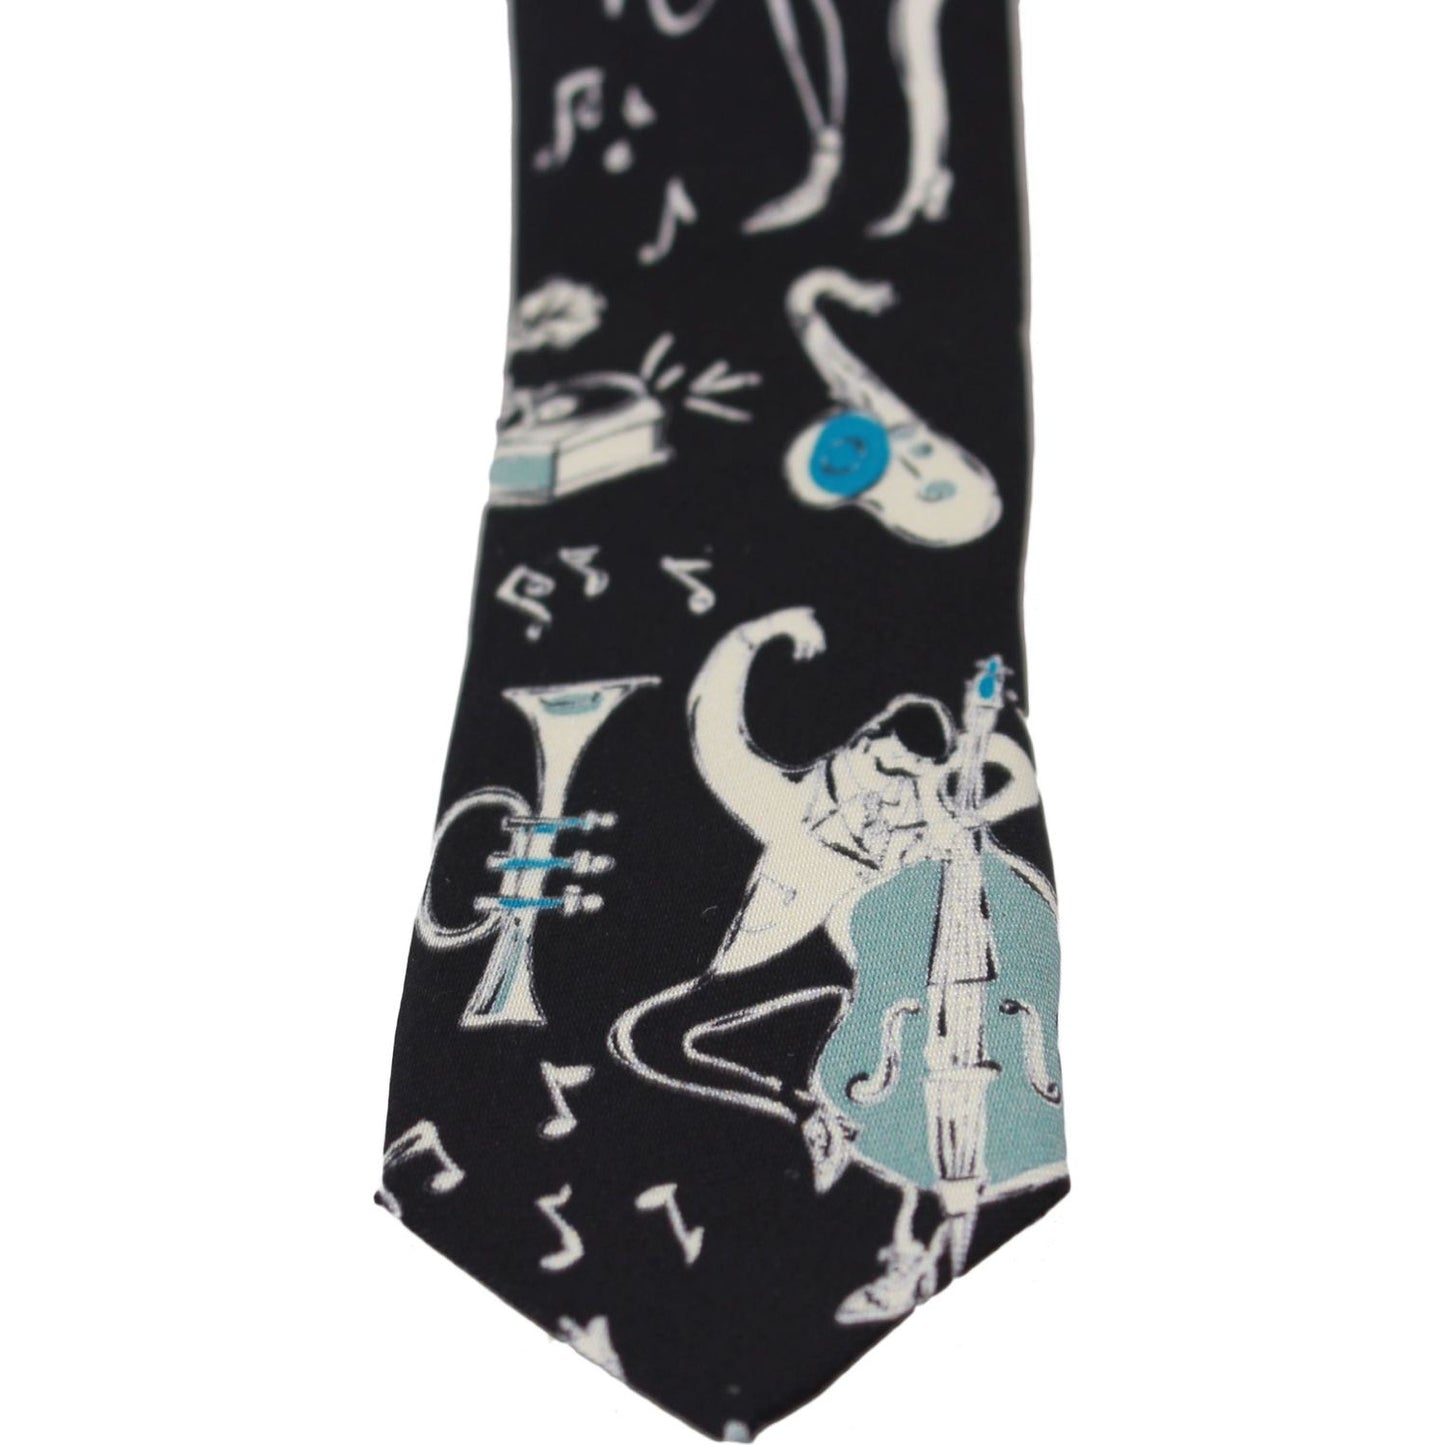 Dolce & Gabbana Elegant Black Music Pattern Silk Neck Tie black-100-silk-musical-isntrument-print-classic-tie Necktie